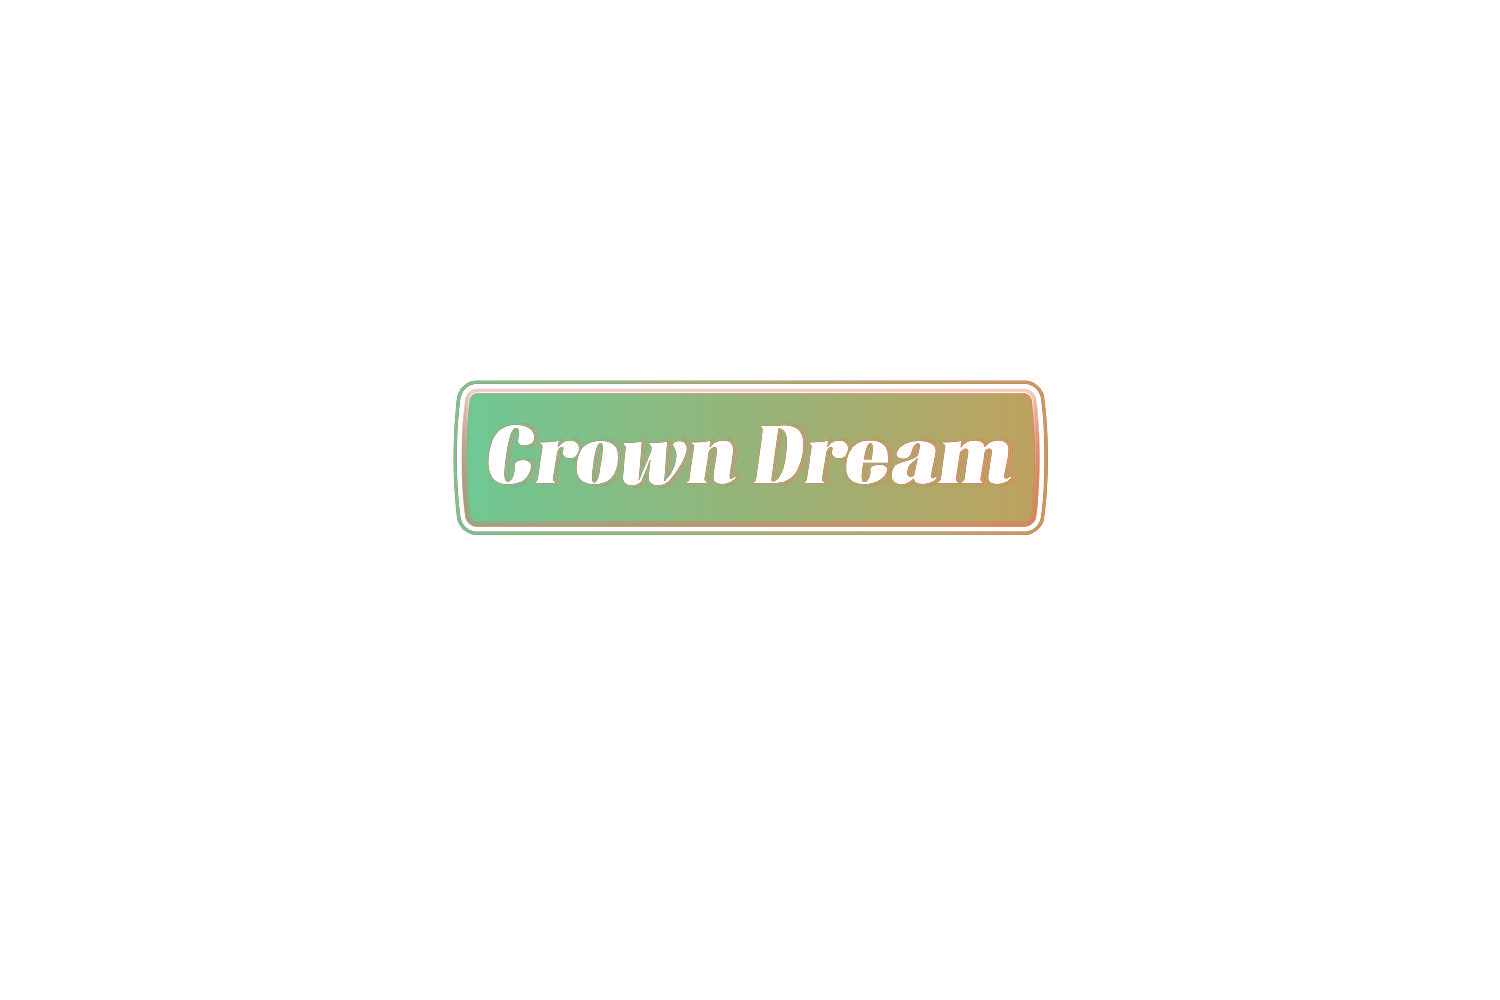 CROWN DREAM